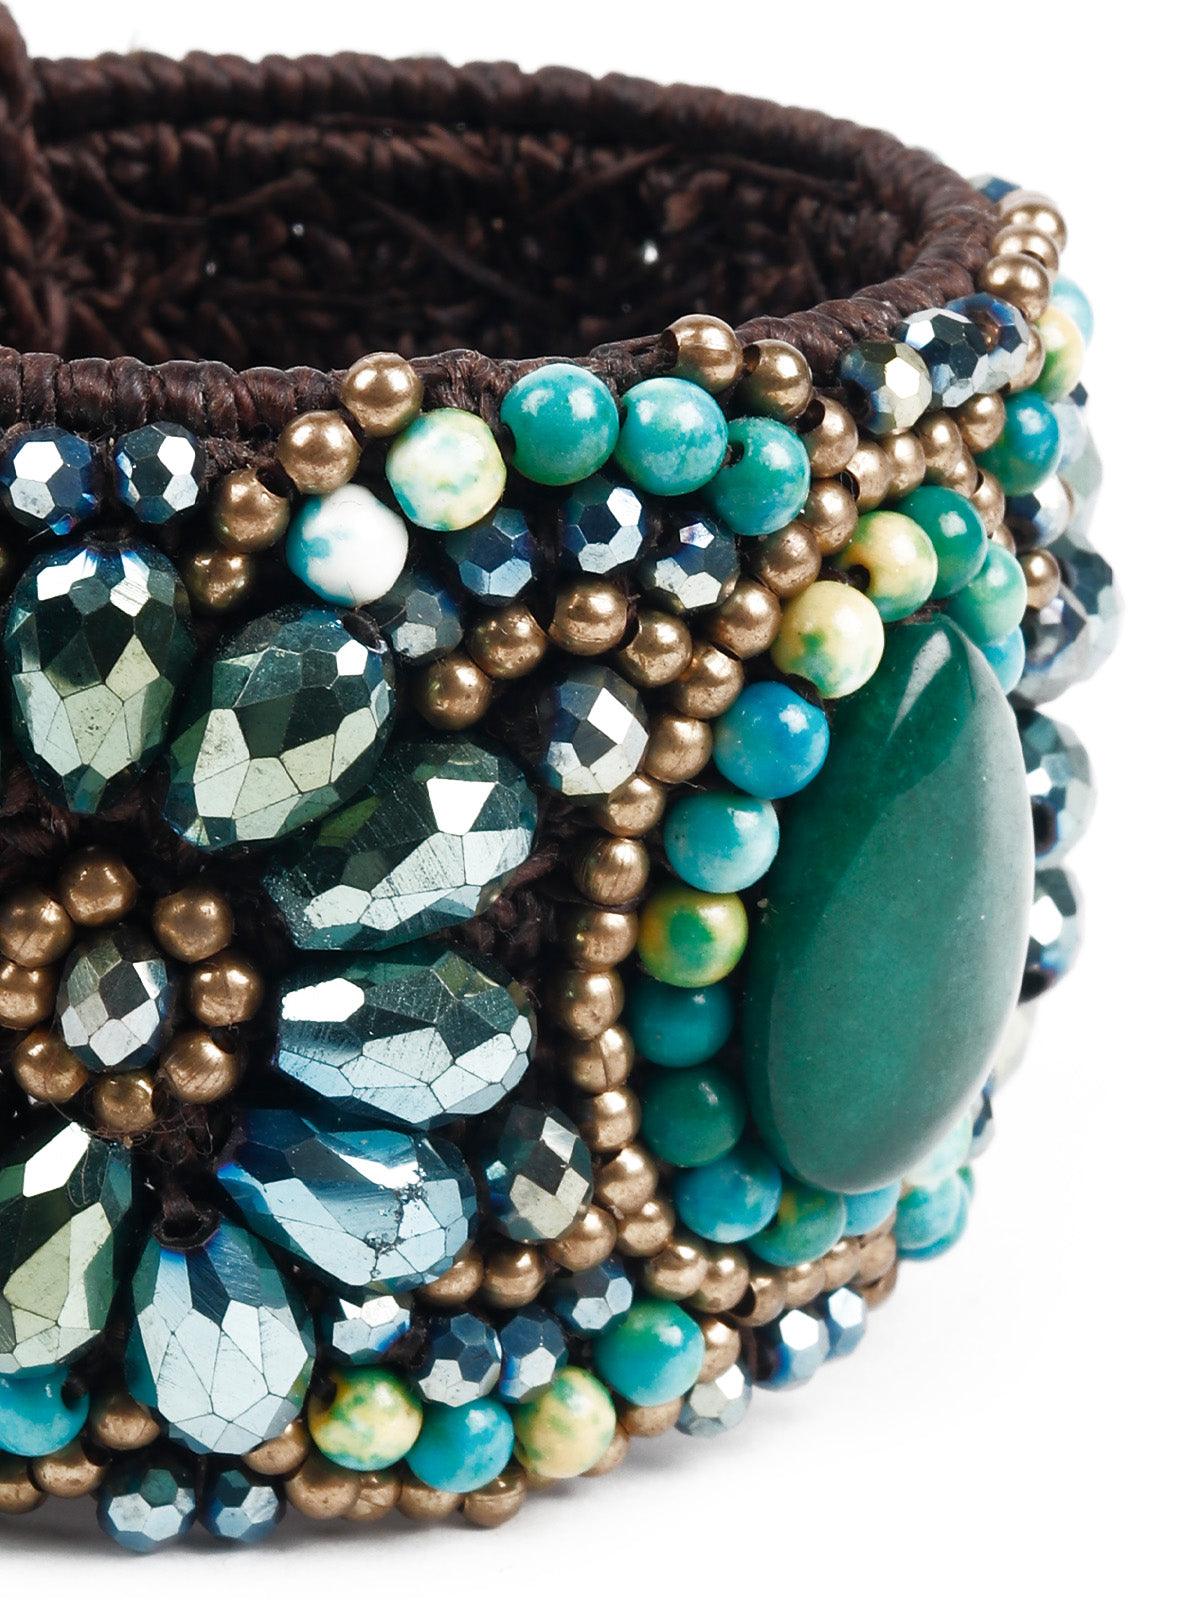 Women's Stunning Embellished Bracelet - Odette